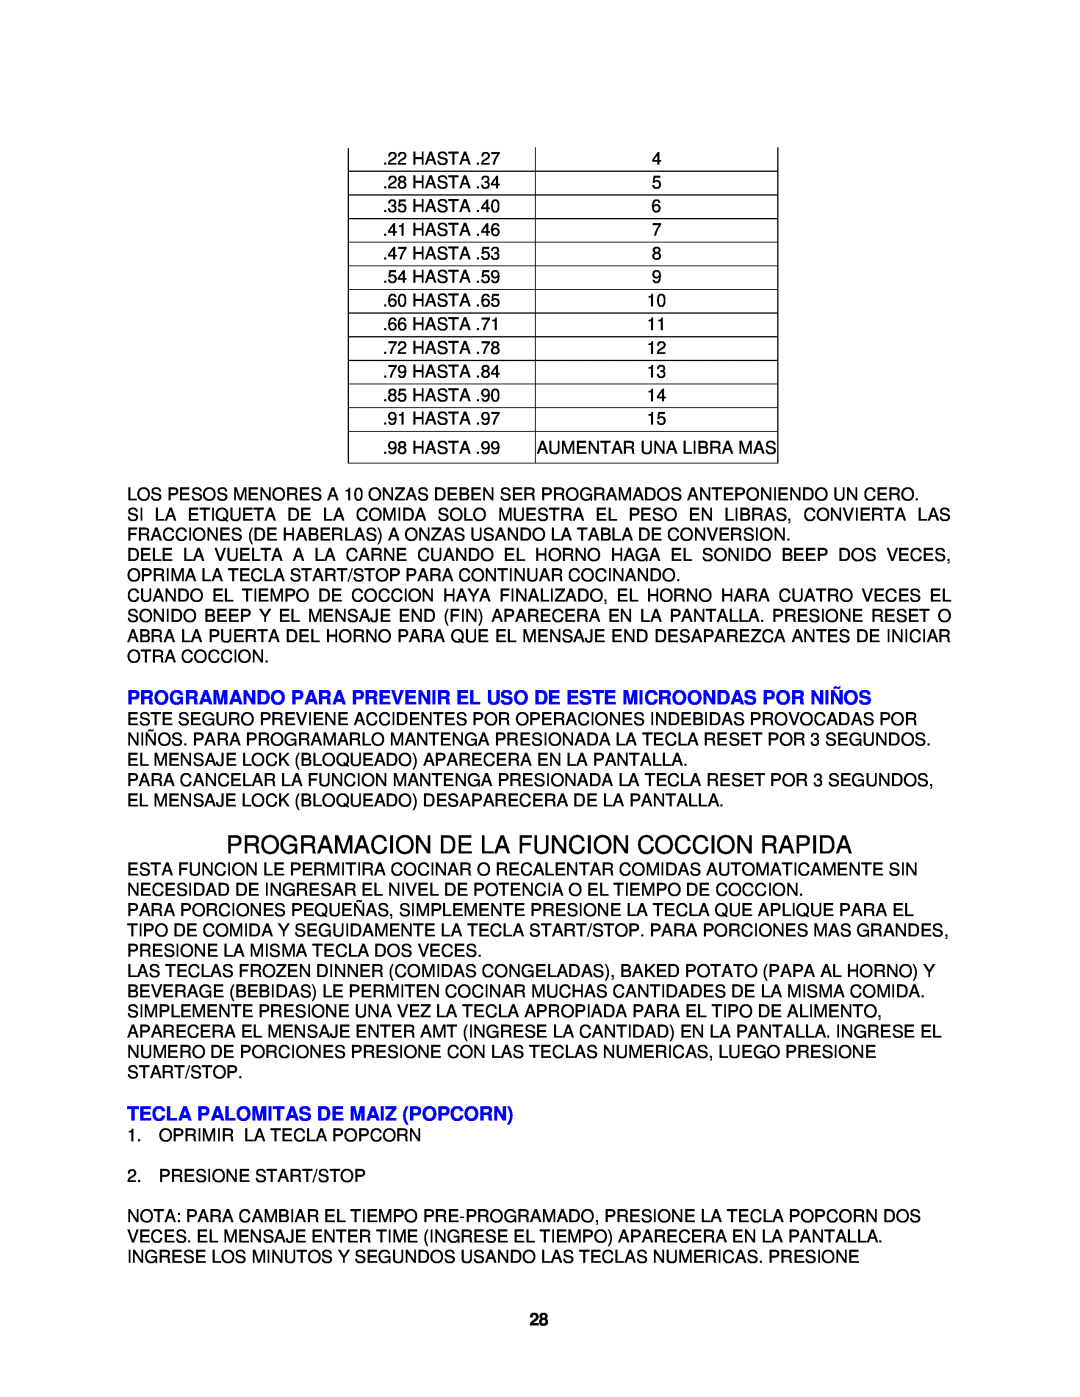 Avanti MO8004MST instruction manual Programacion De La Funcion Coccion Rapida, Tecla Palomitas De Maiz Popcorn 